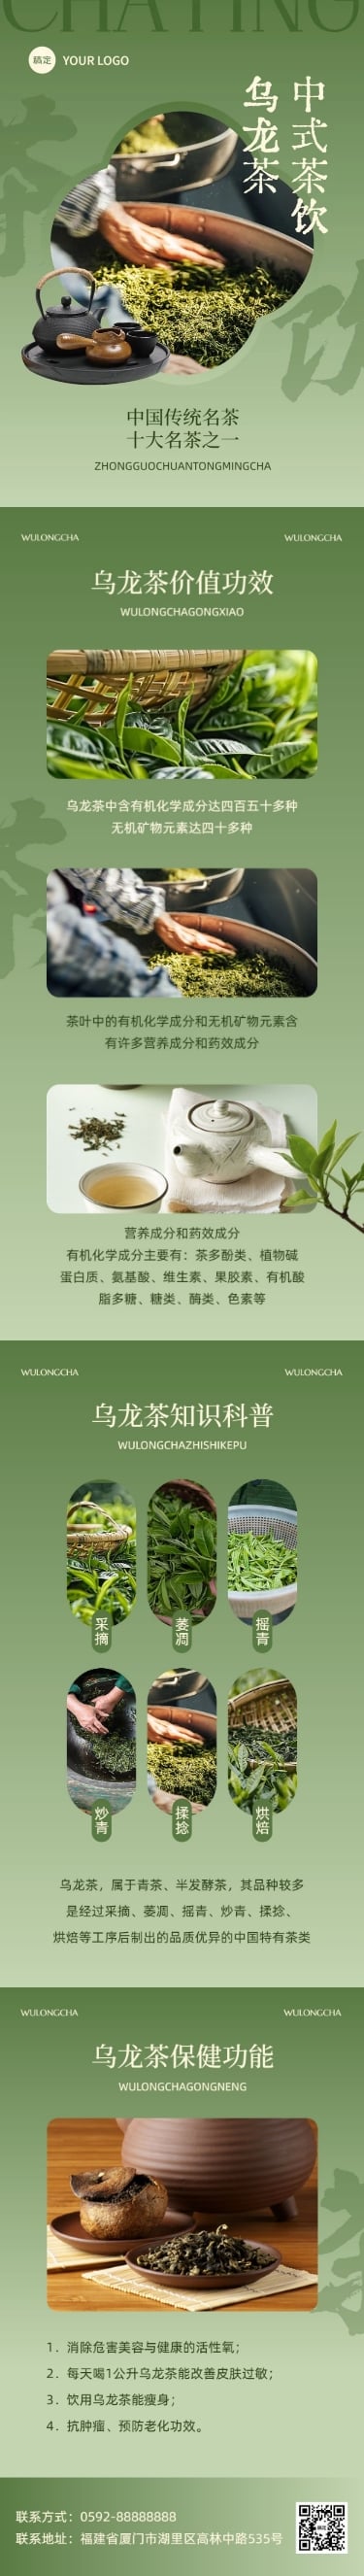 茶叶营销宣传微信公众号文章长图预览效果